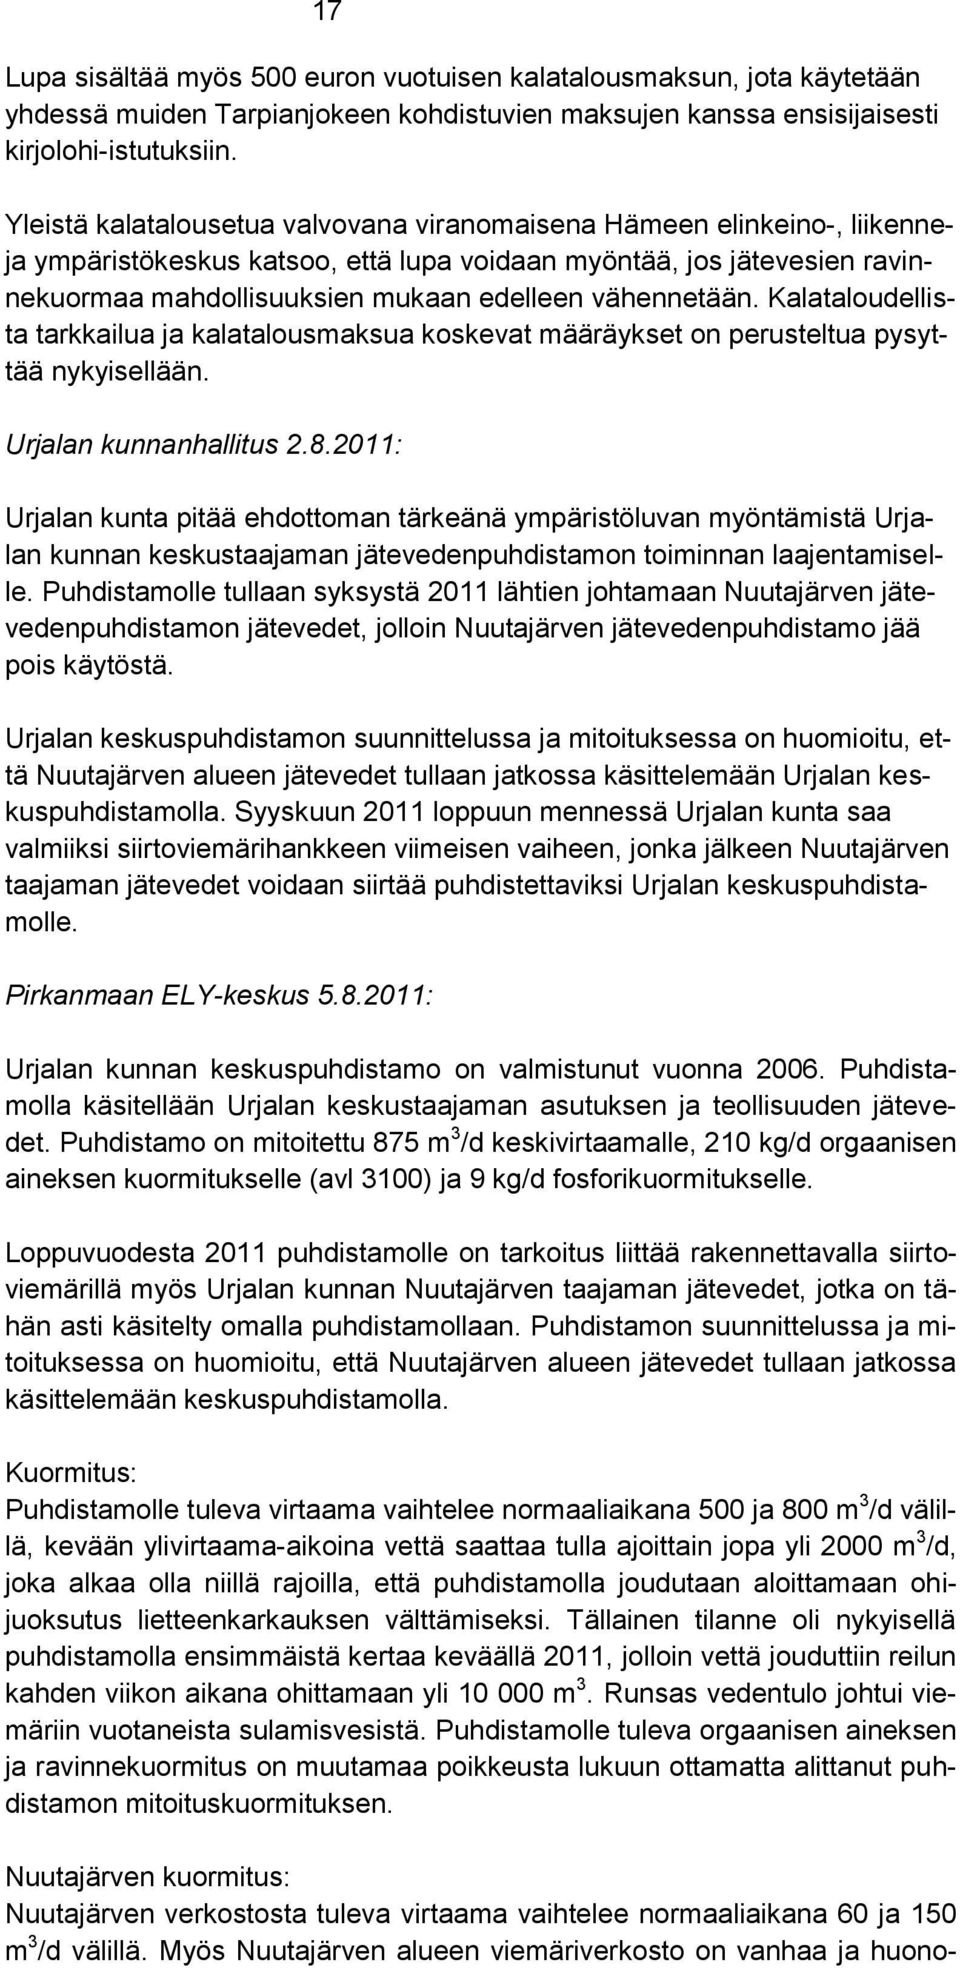 vähennetään. Kalataloudellista tarkkailua ja kalatalousmaksua koskevat määräykset on perusteltua pysyttää nykyisellään. Urjalan kunnanhallitus 2.8.